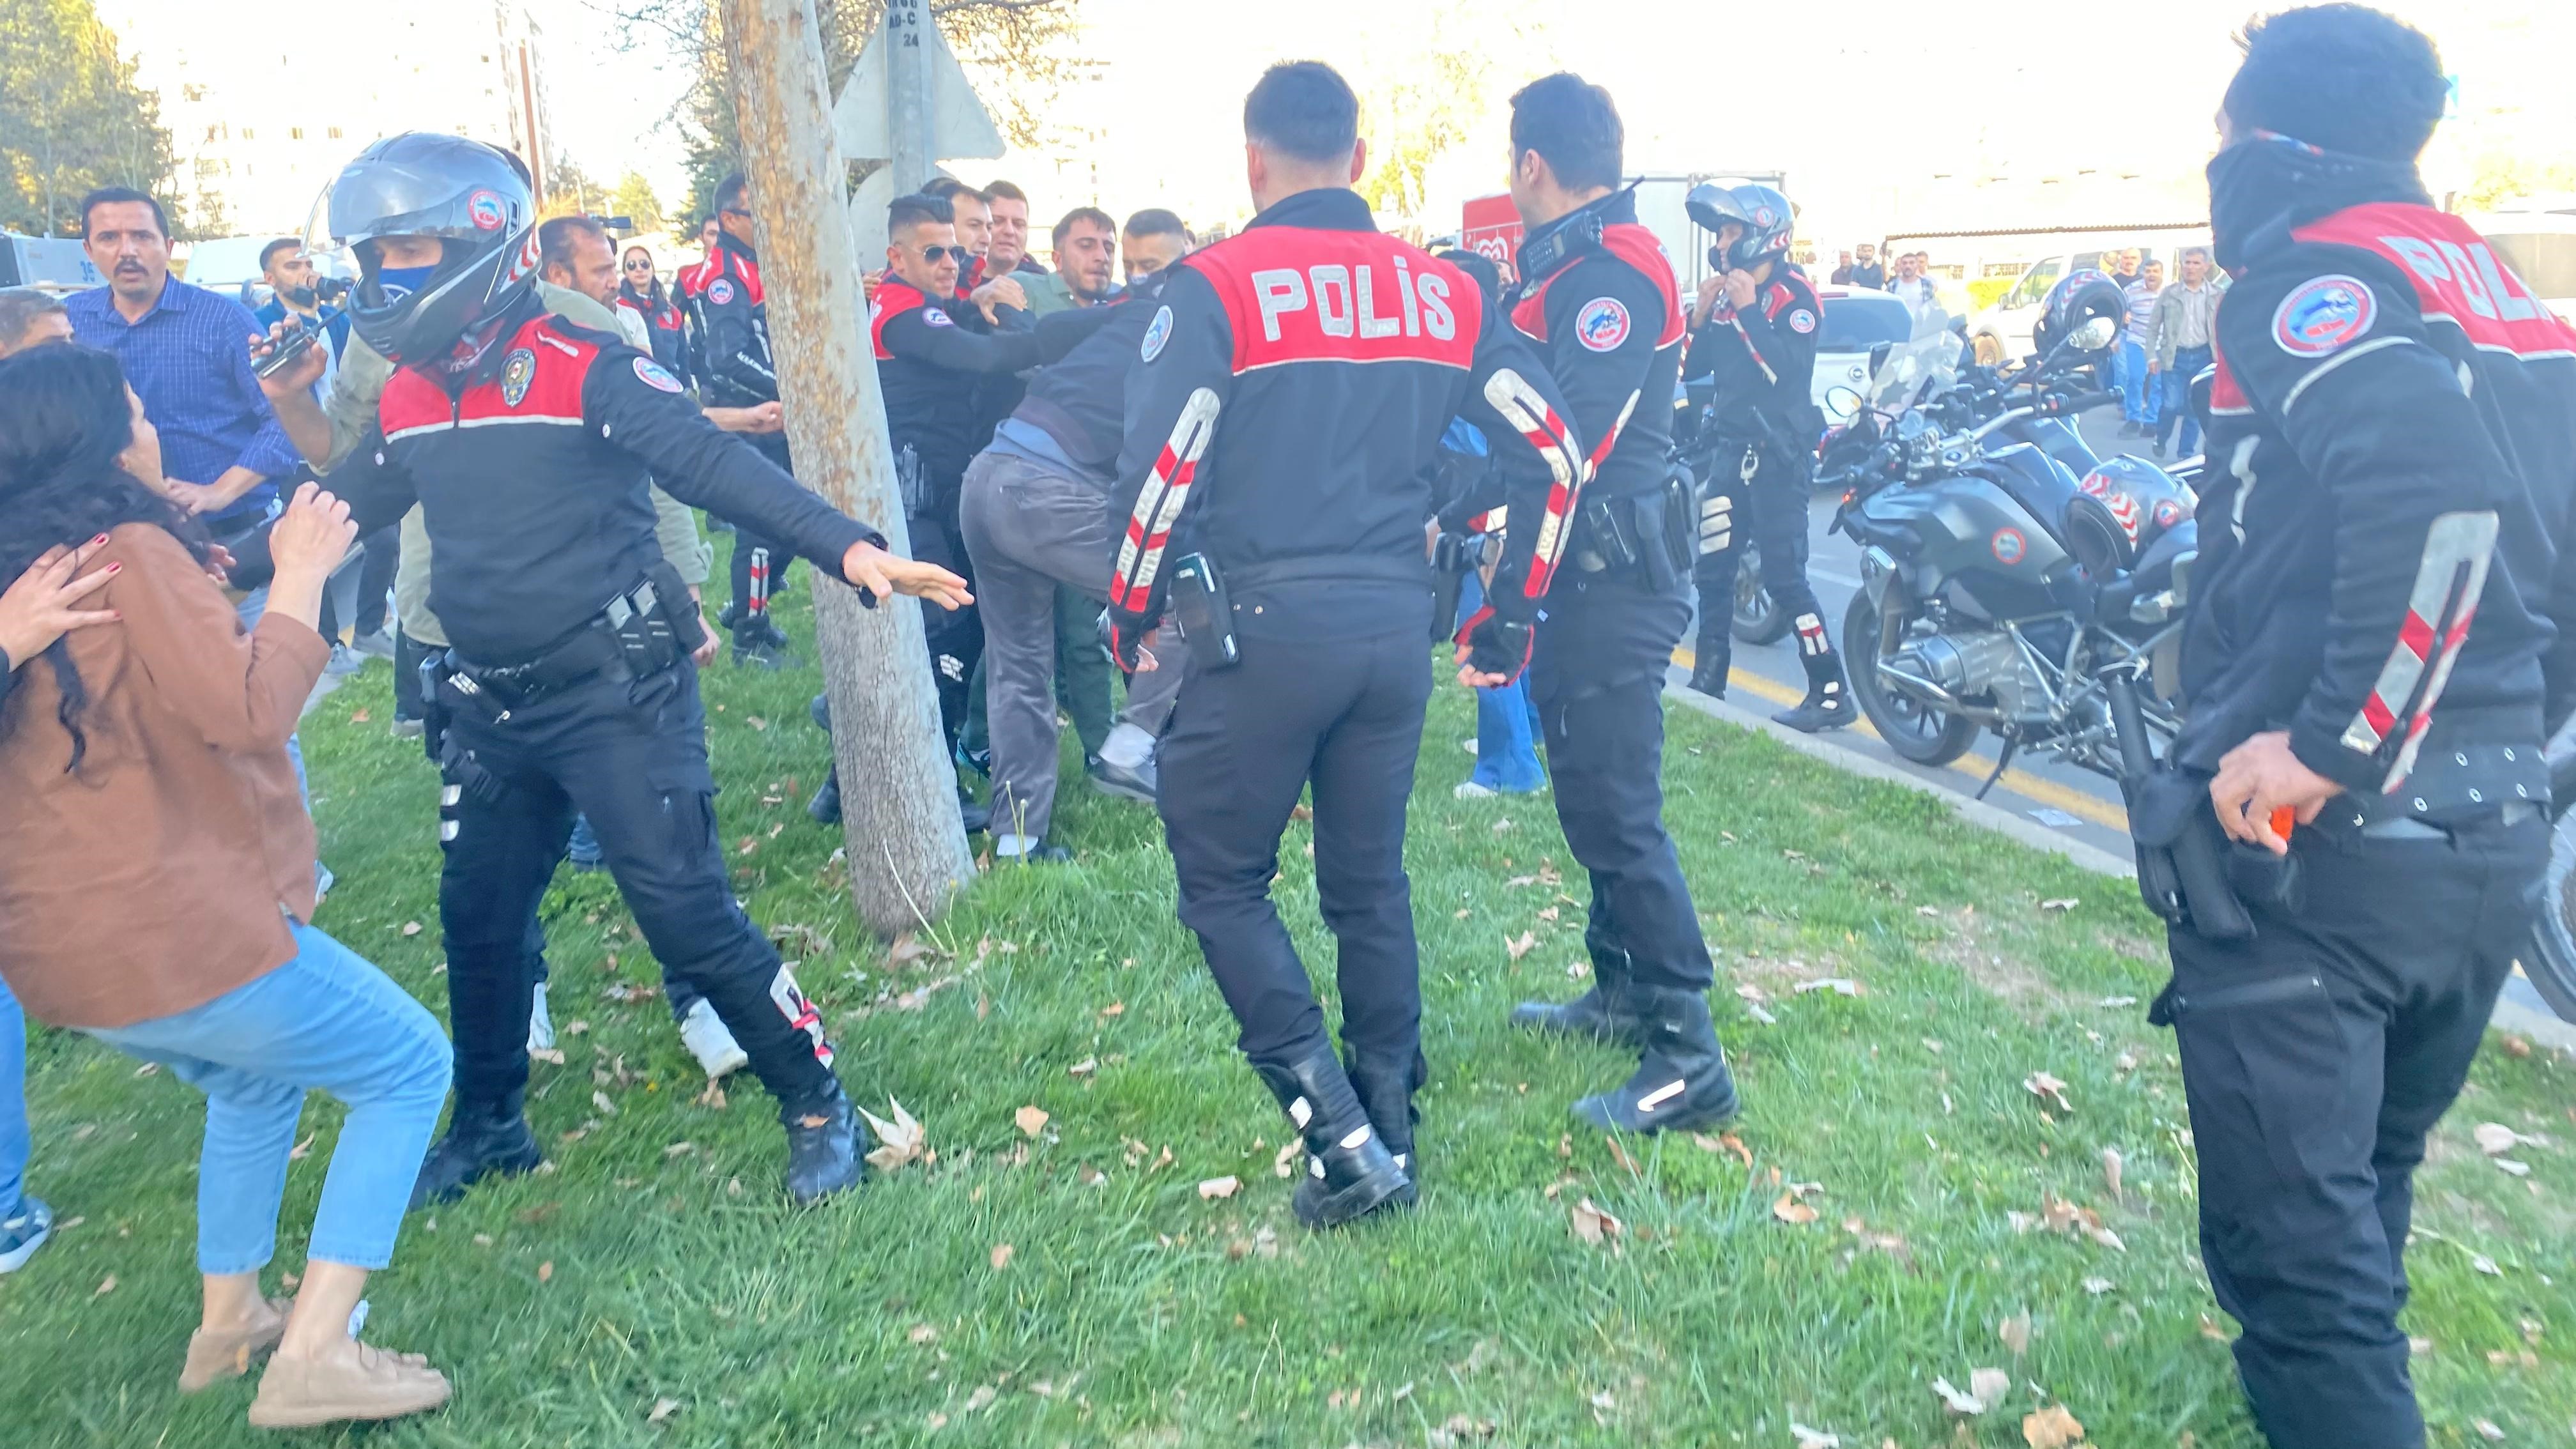 Diyarbakır'da Izinsiz Yürümek Isteyen Dem'lilere Polis Müdahale Etti (5)